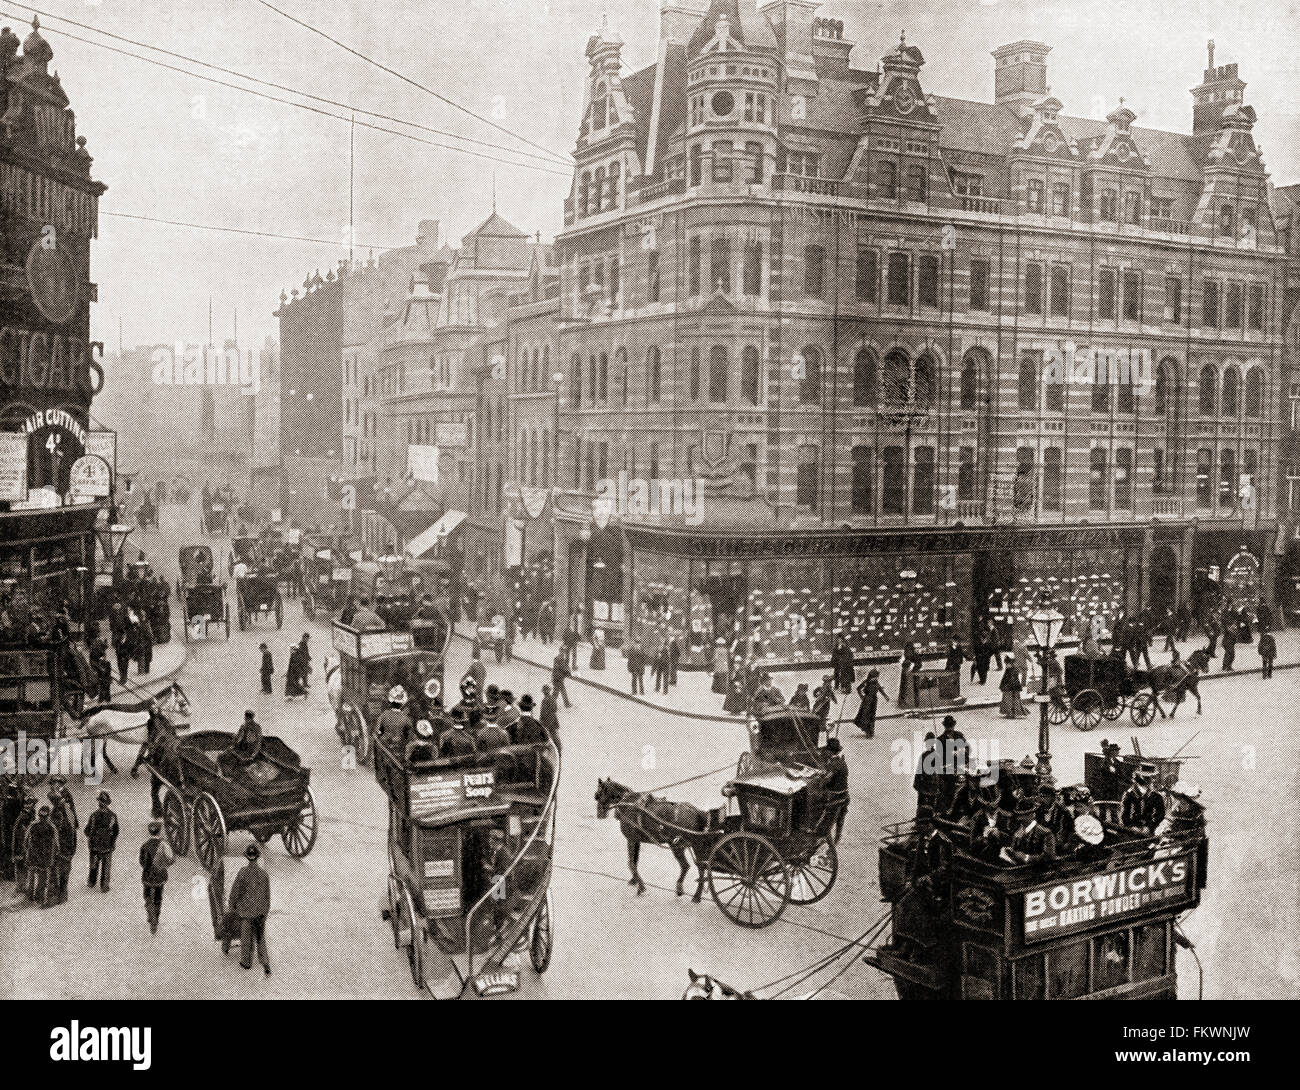 Великобритания конца 19 века. Сохо Лондон 19 век. Лондон 19 век Бейкер стрит. Пикадилли Лондон в 1900. Лондон 19 век Альбион Стрид.